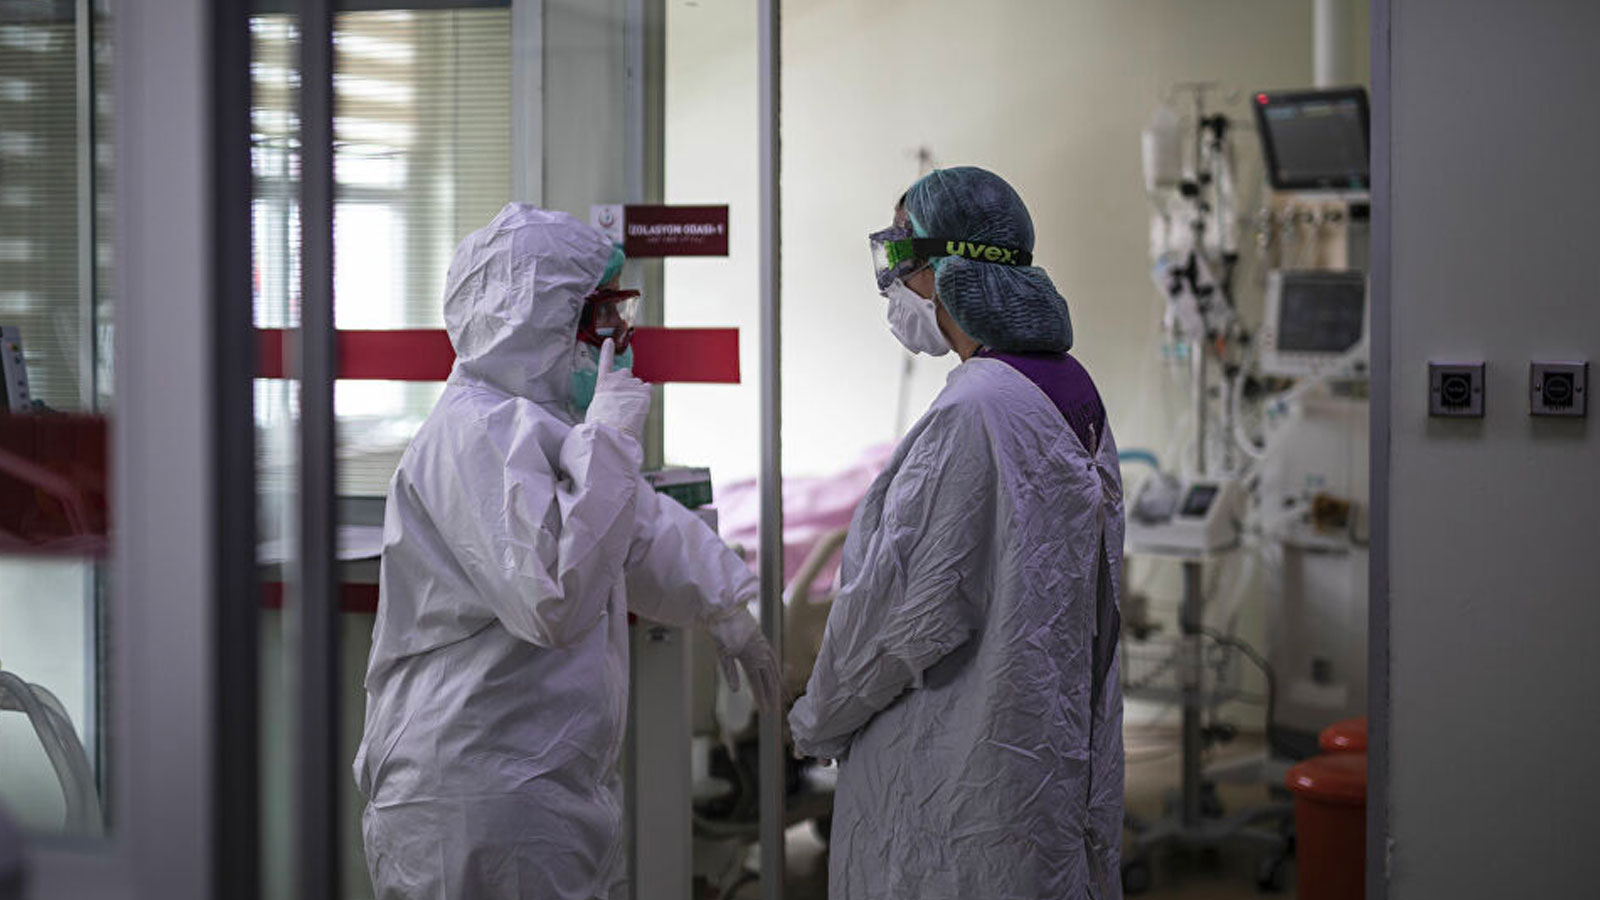 Tunceli'de bakımevinde koronavirüsten 12 kişi öldü, soruşturma başlatıldı